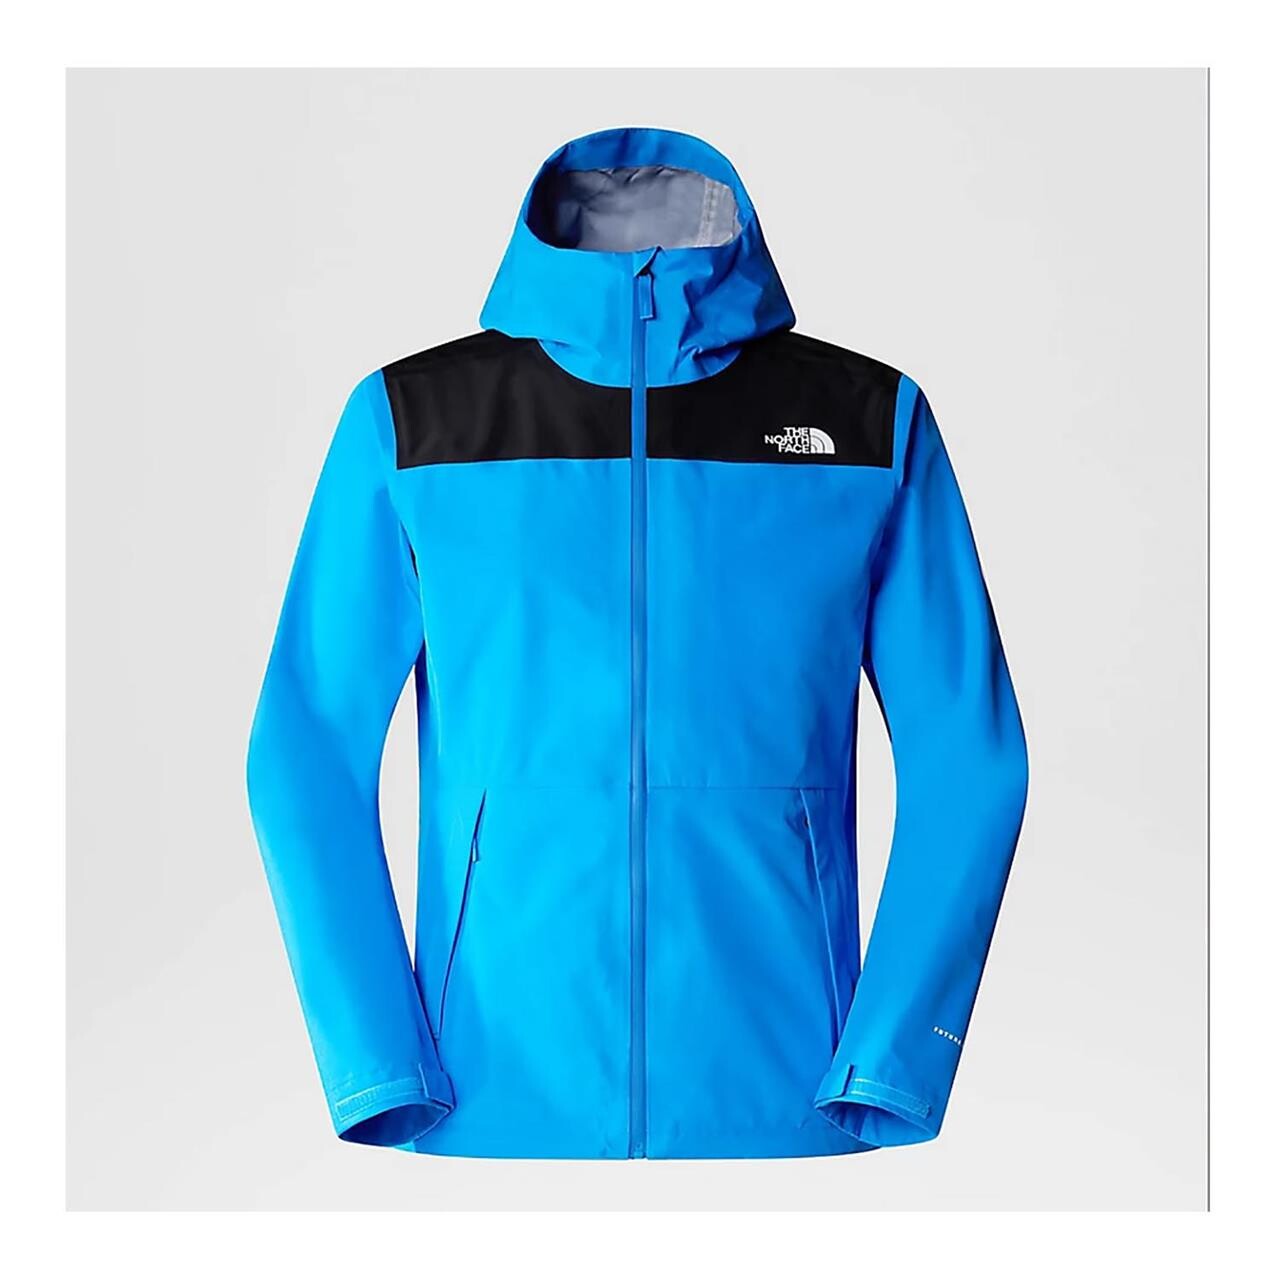 Se The North Face Mens Dryzzle Futurelight Jacket (Blå (OPTIC BLUE/TNF BLACK) Large) hos Friluftsland.dk